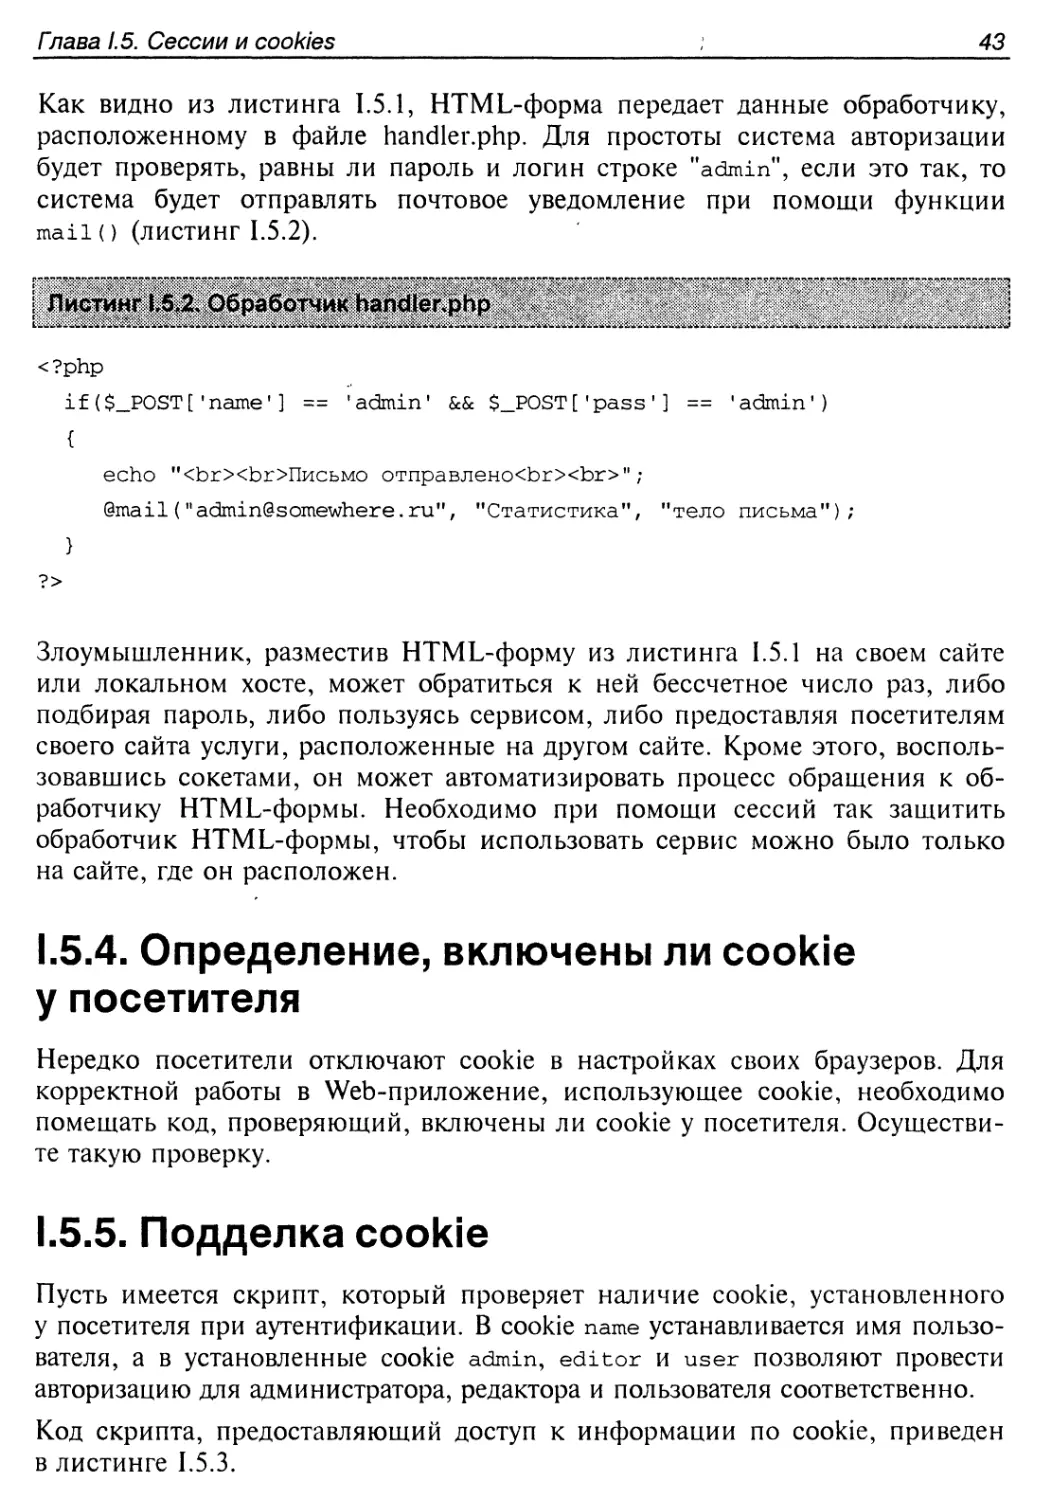 1.5.4. Определение, включены ли cookie у посетителя
1.5.5. Подделка cookie